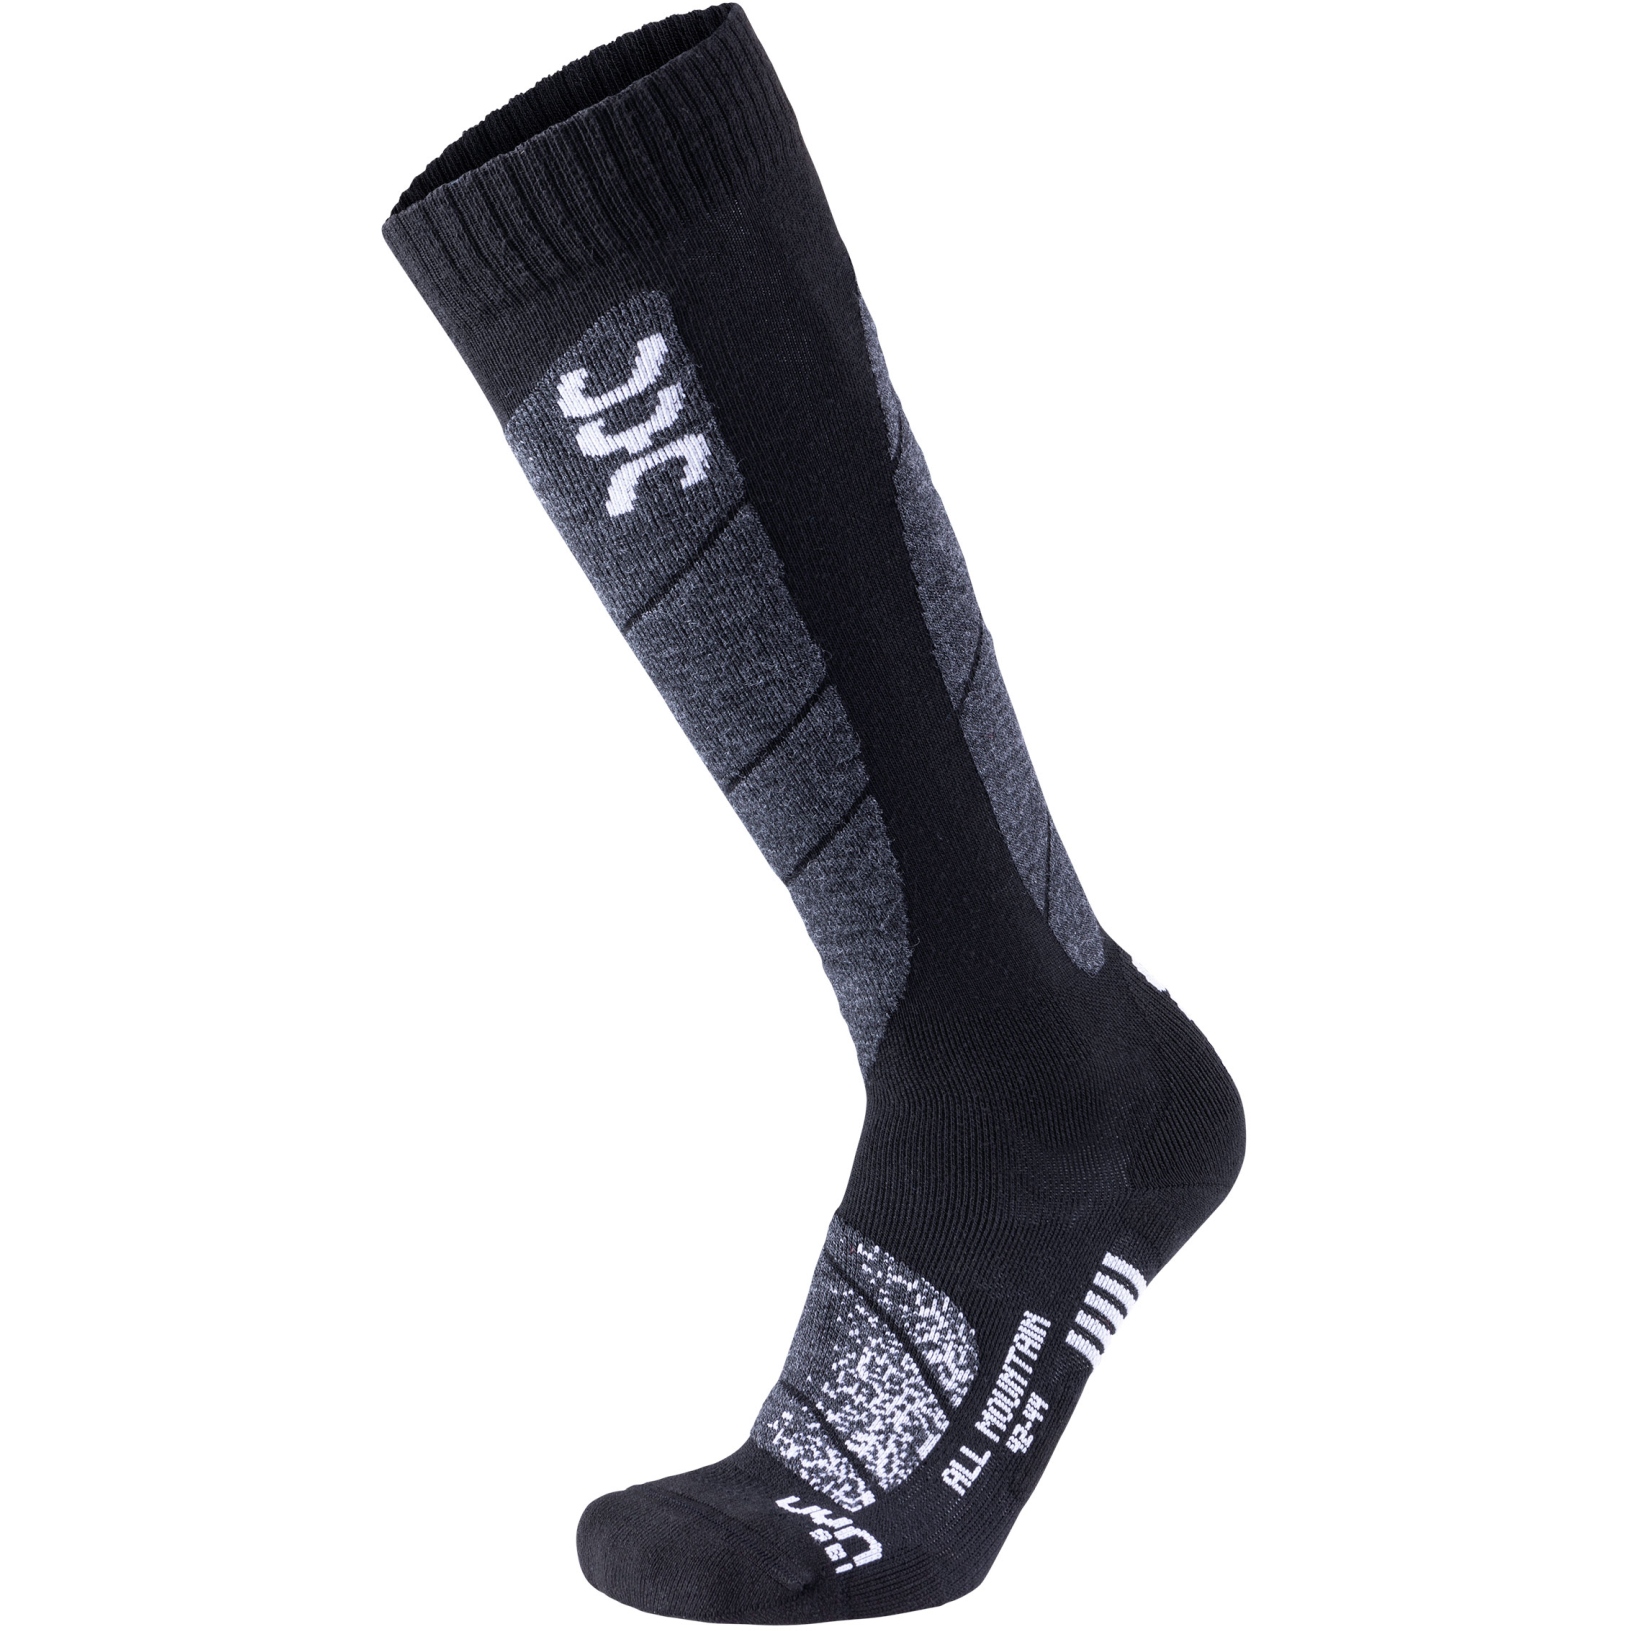 Produktbild von UYN Ski All Mountain Socken Herren - Schwarz/Weiß